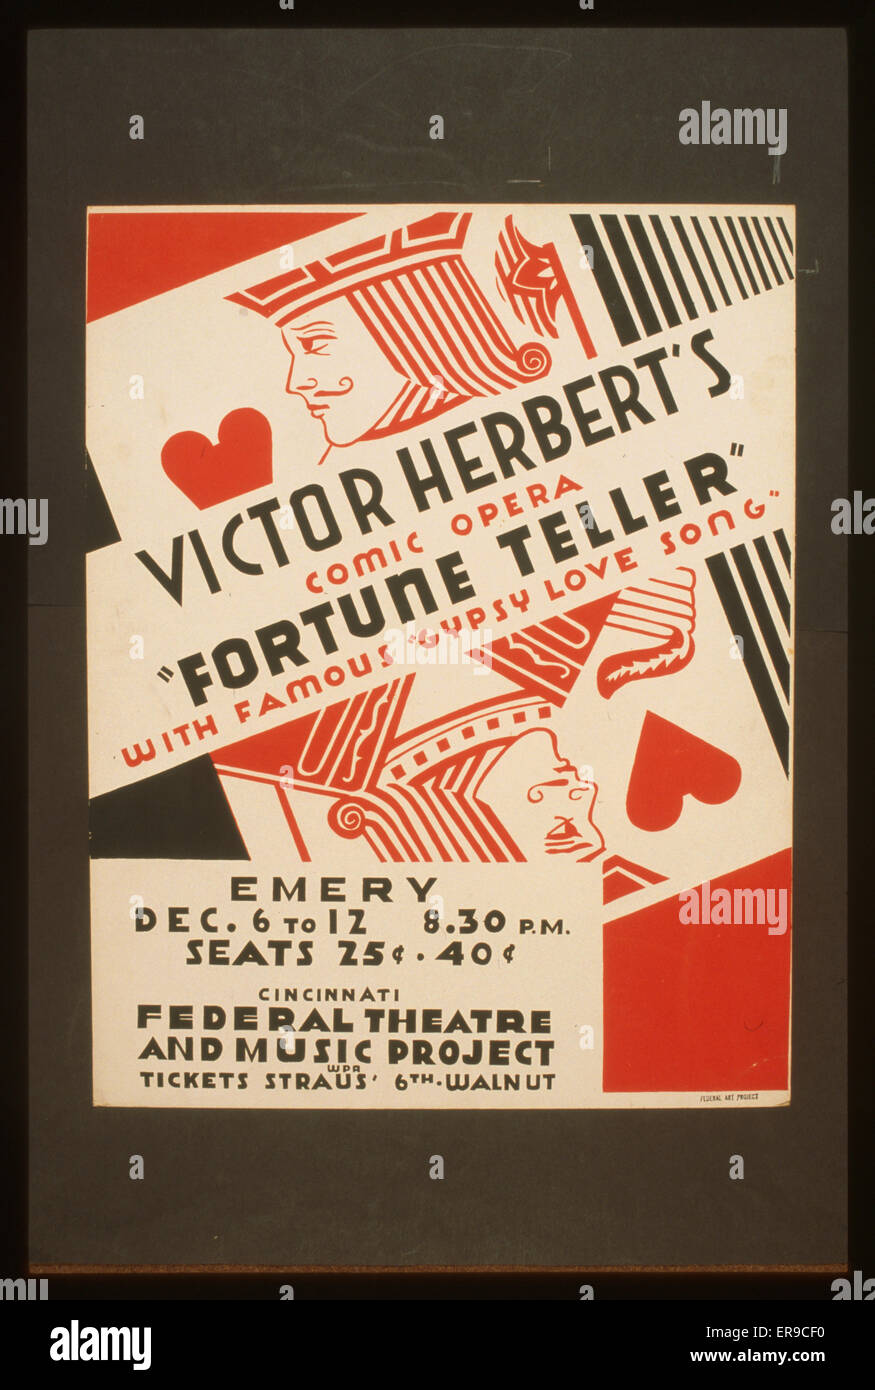 L'opéra comique de Victor Herbert, Fortune Teller, avec les célèbres gyps Banque D'Images